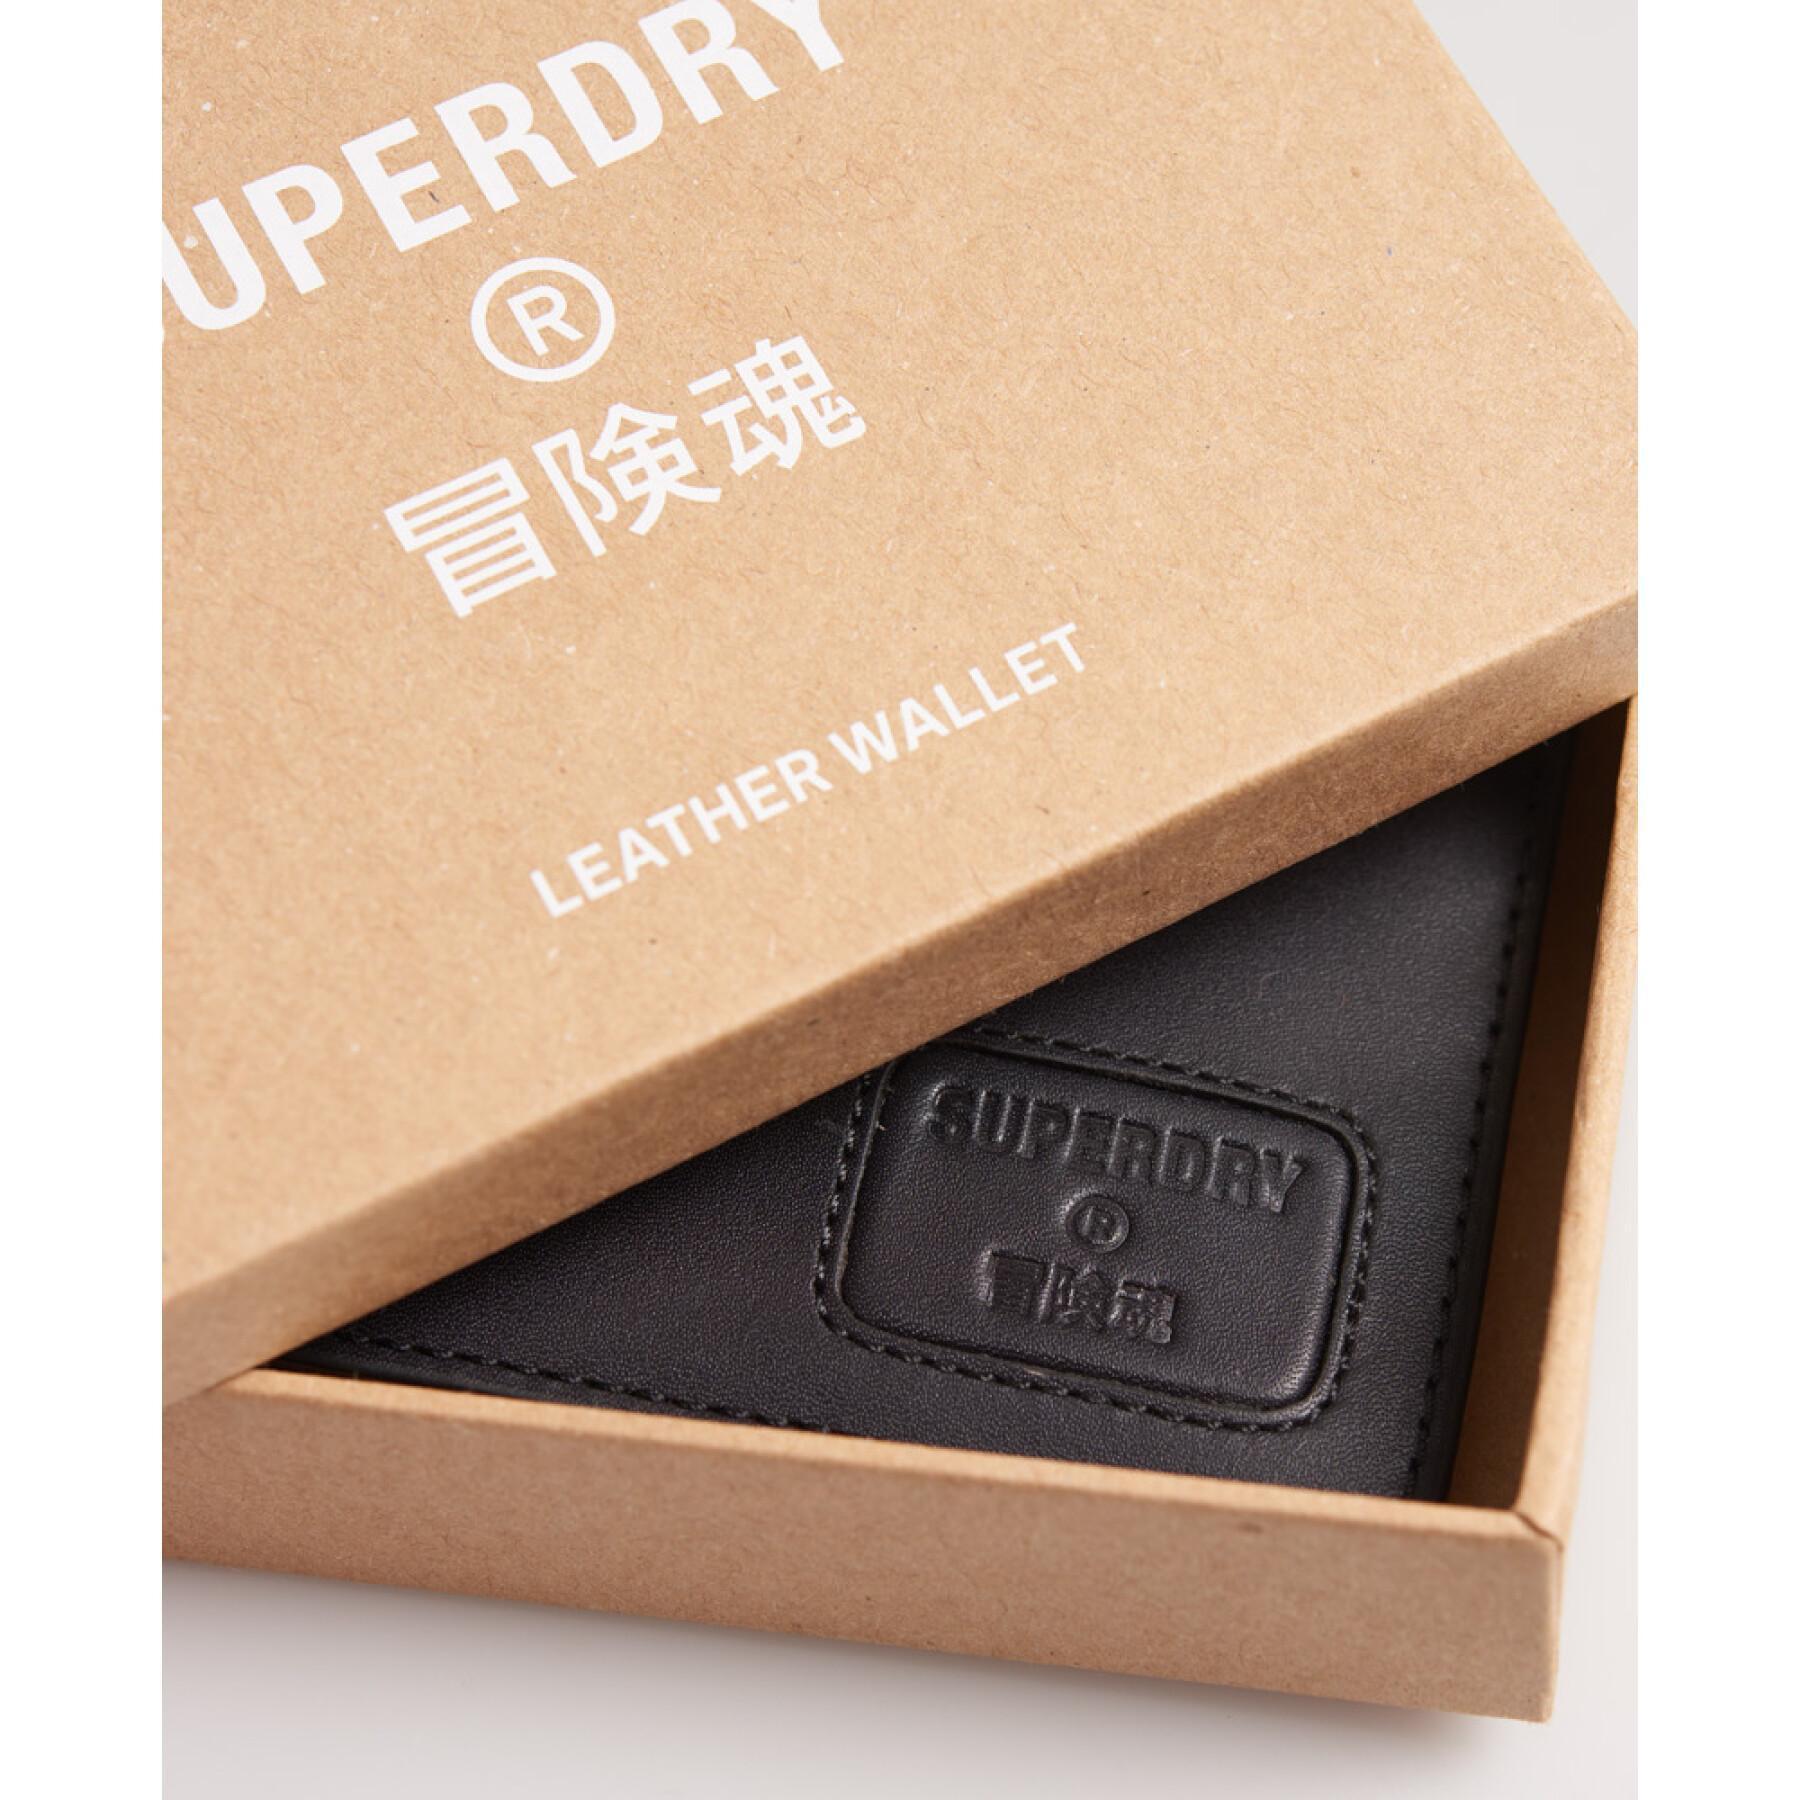 Plånbok i läder med klaff Superdry NYC